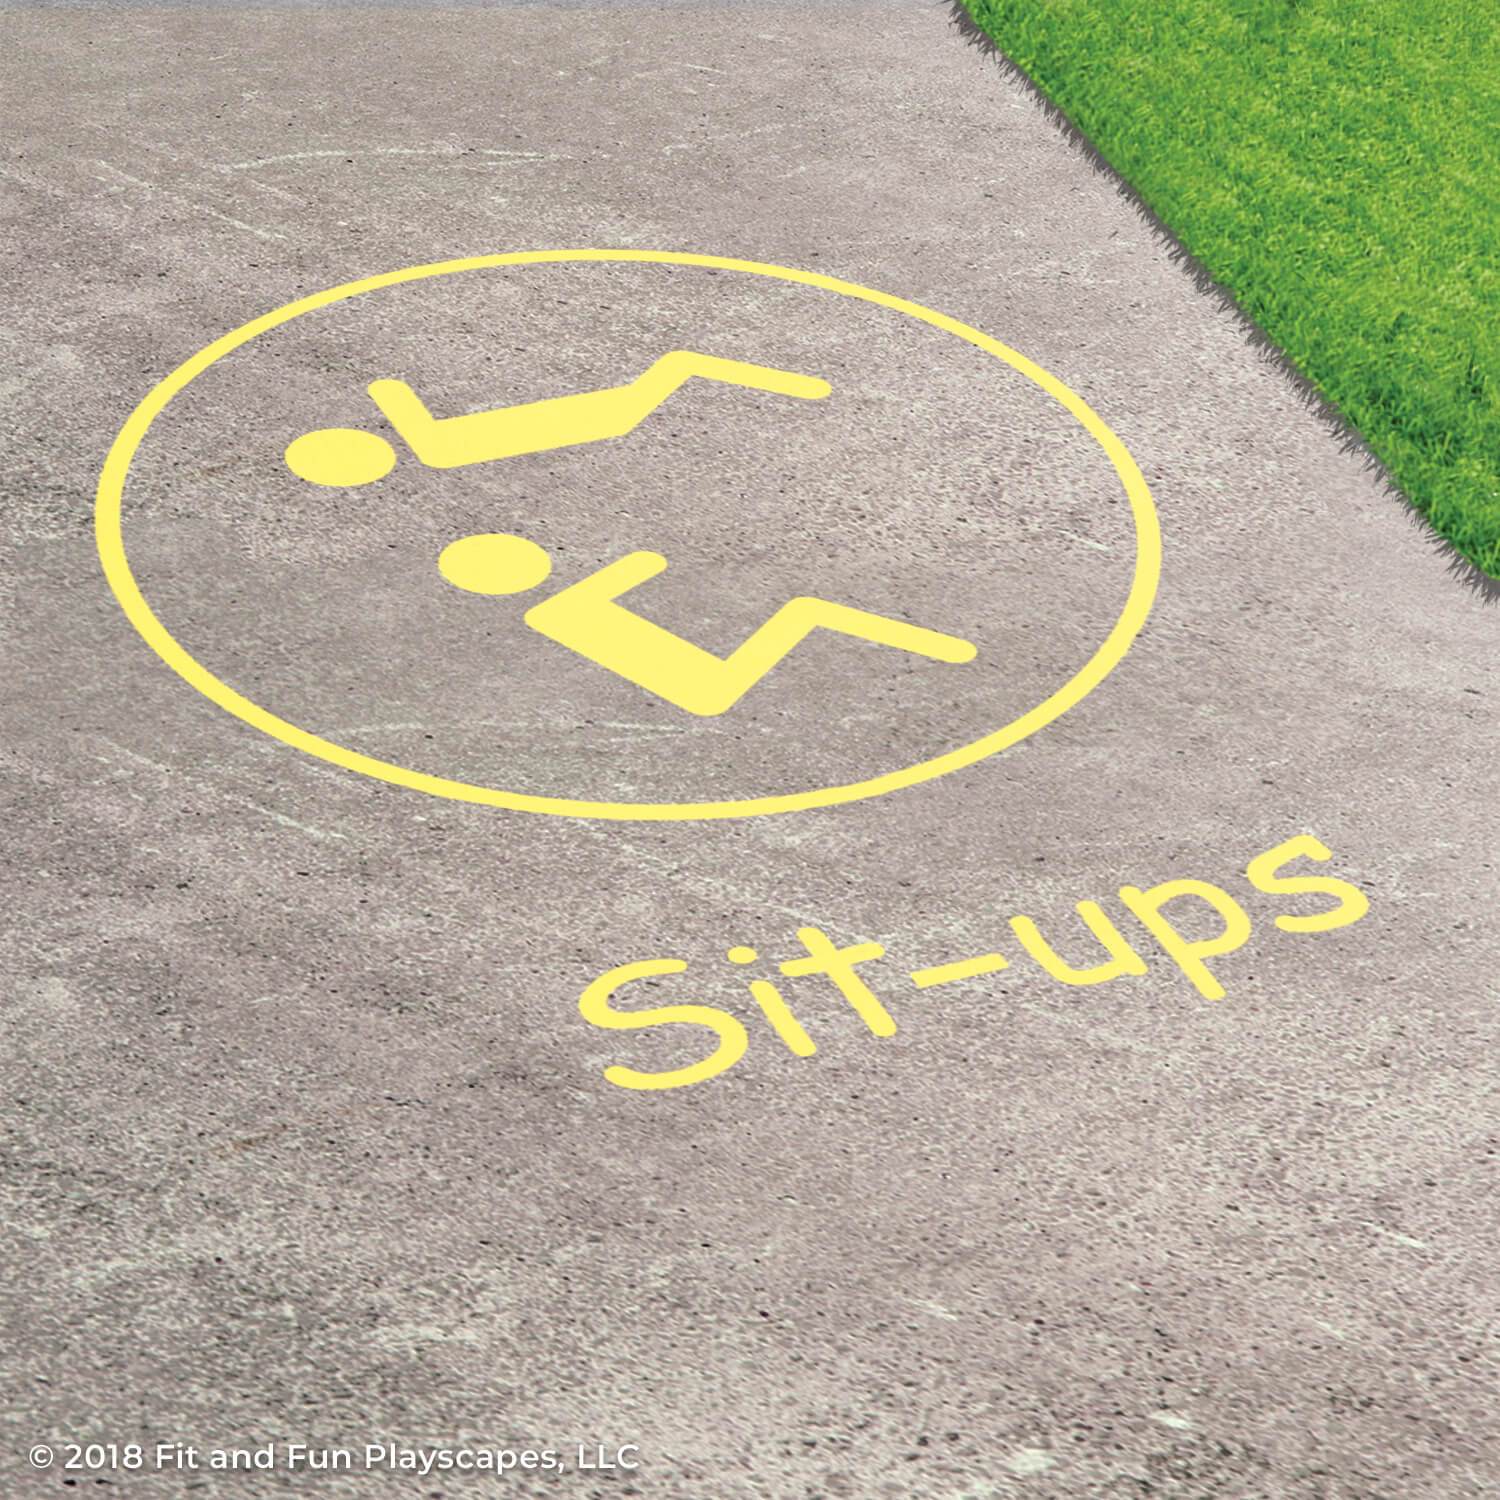 Sit-ups Reusable Stencils